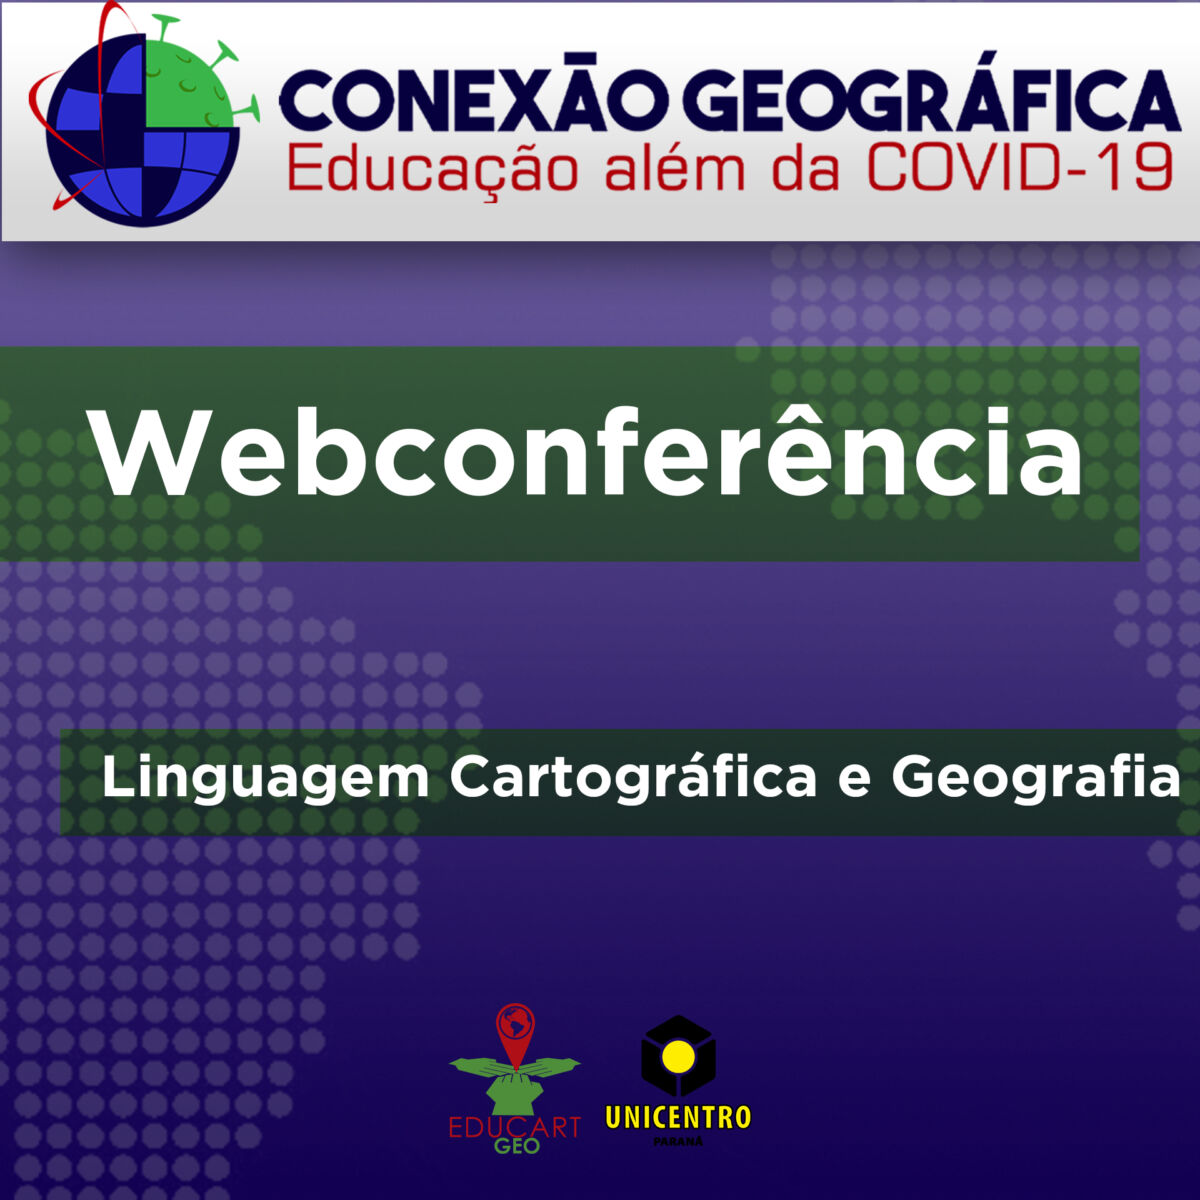 Webconferência “Linguagem Cartográfica e Geografia” (24/06/2020)